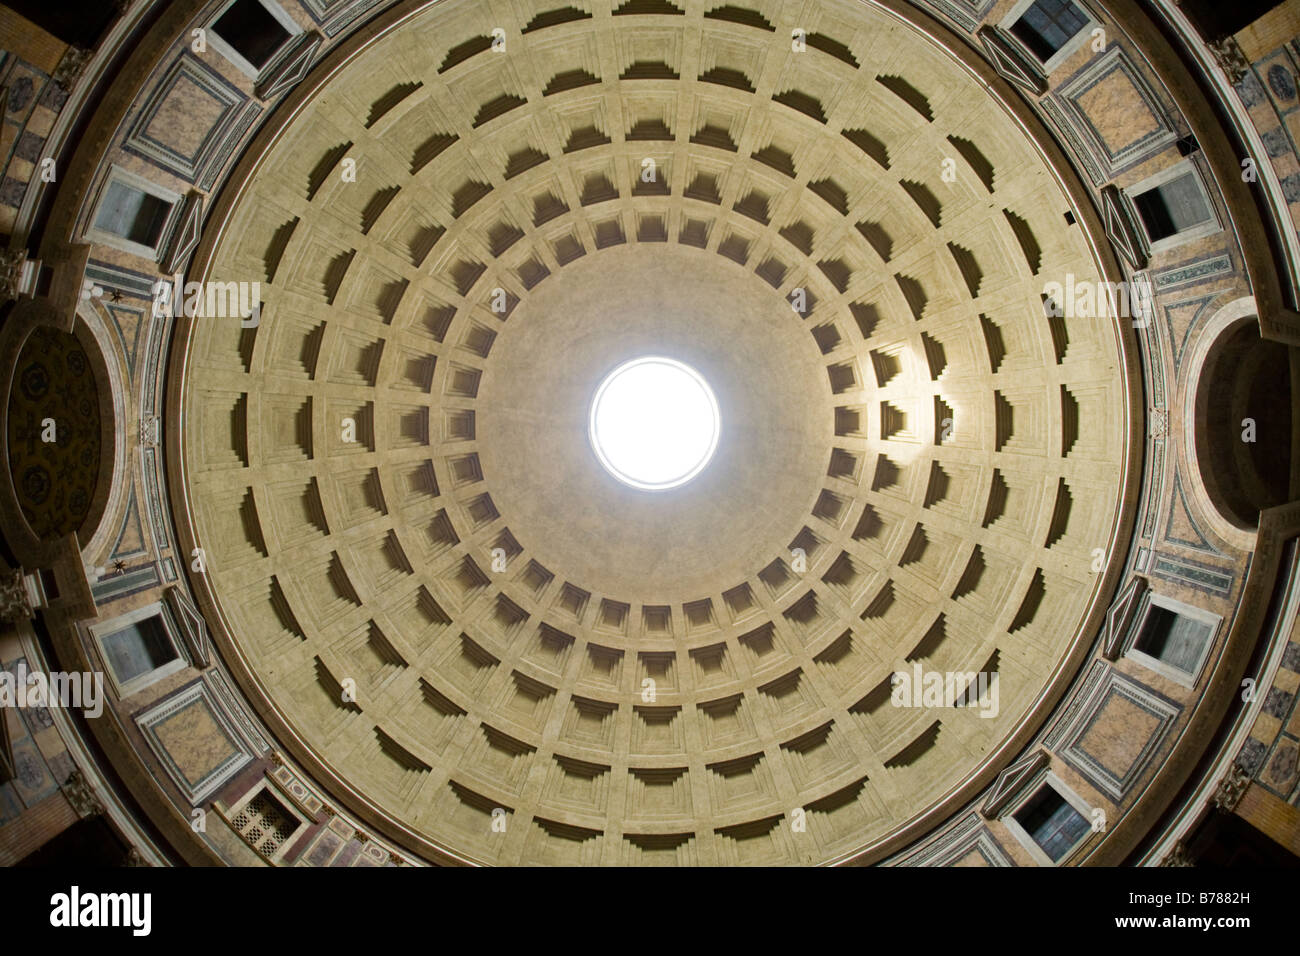 Dans l'Oculus Panthéon de Rome Italie avec grand angle Banque D'Images